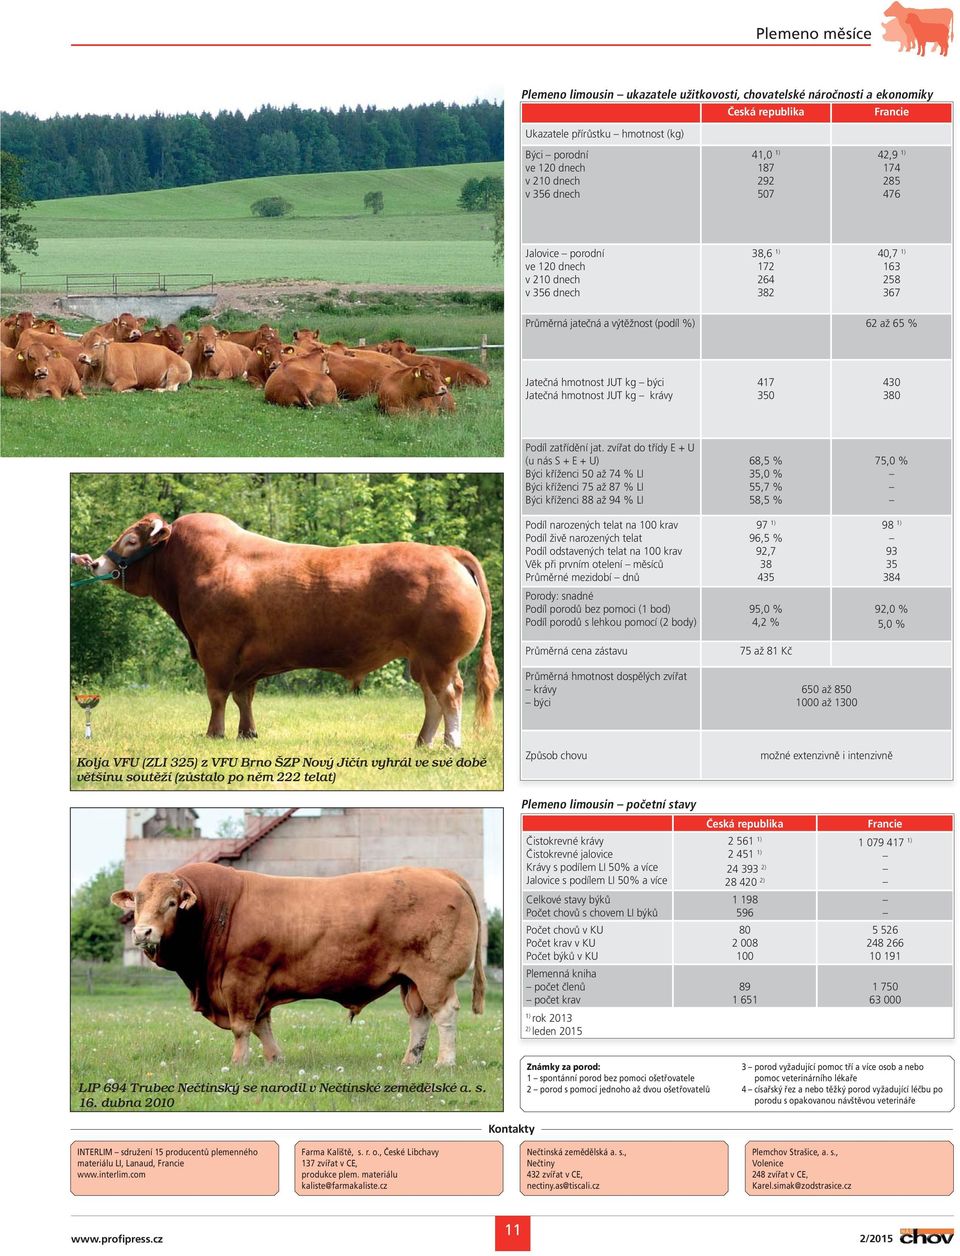 Jatečná hmotnost JUT kg krávy 417 350 430 380 Podíl zatřídění jat.